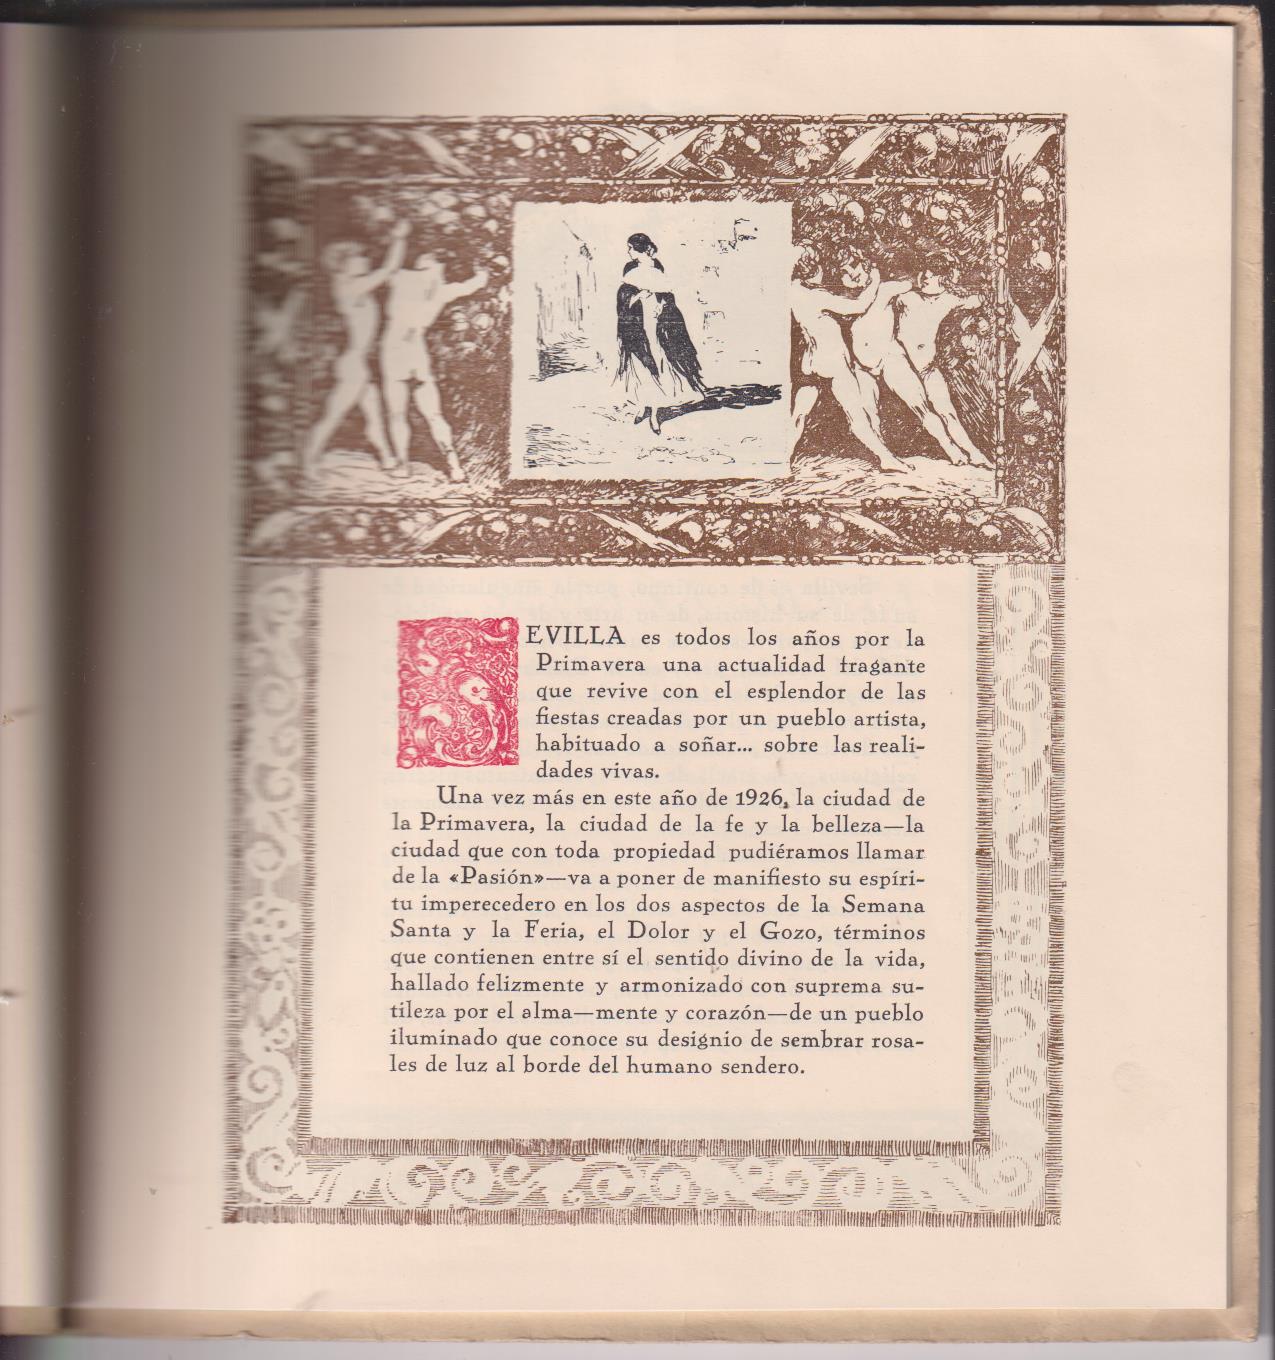 Las Fiestas de Sevilla. E. Marquina. Vistas de Sevilla y Dibujos de Honenleiter. 1926